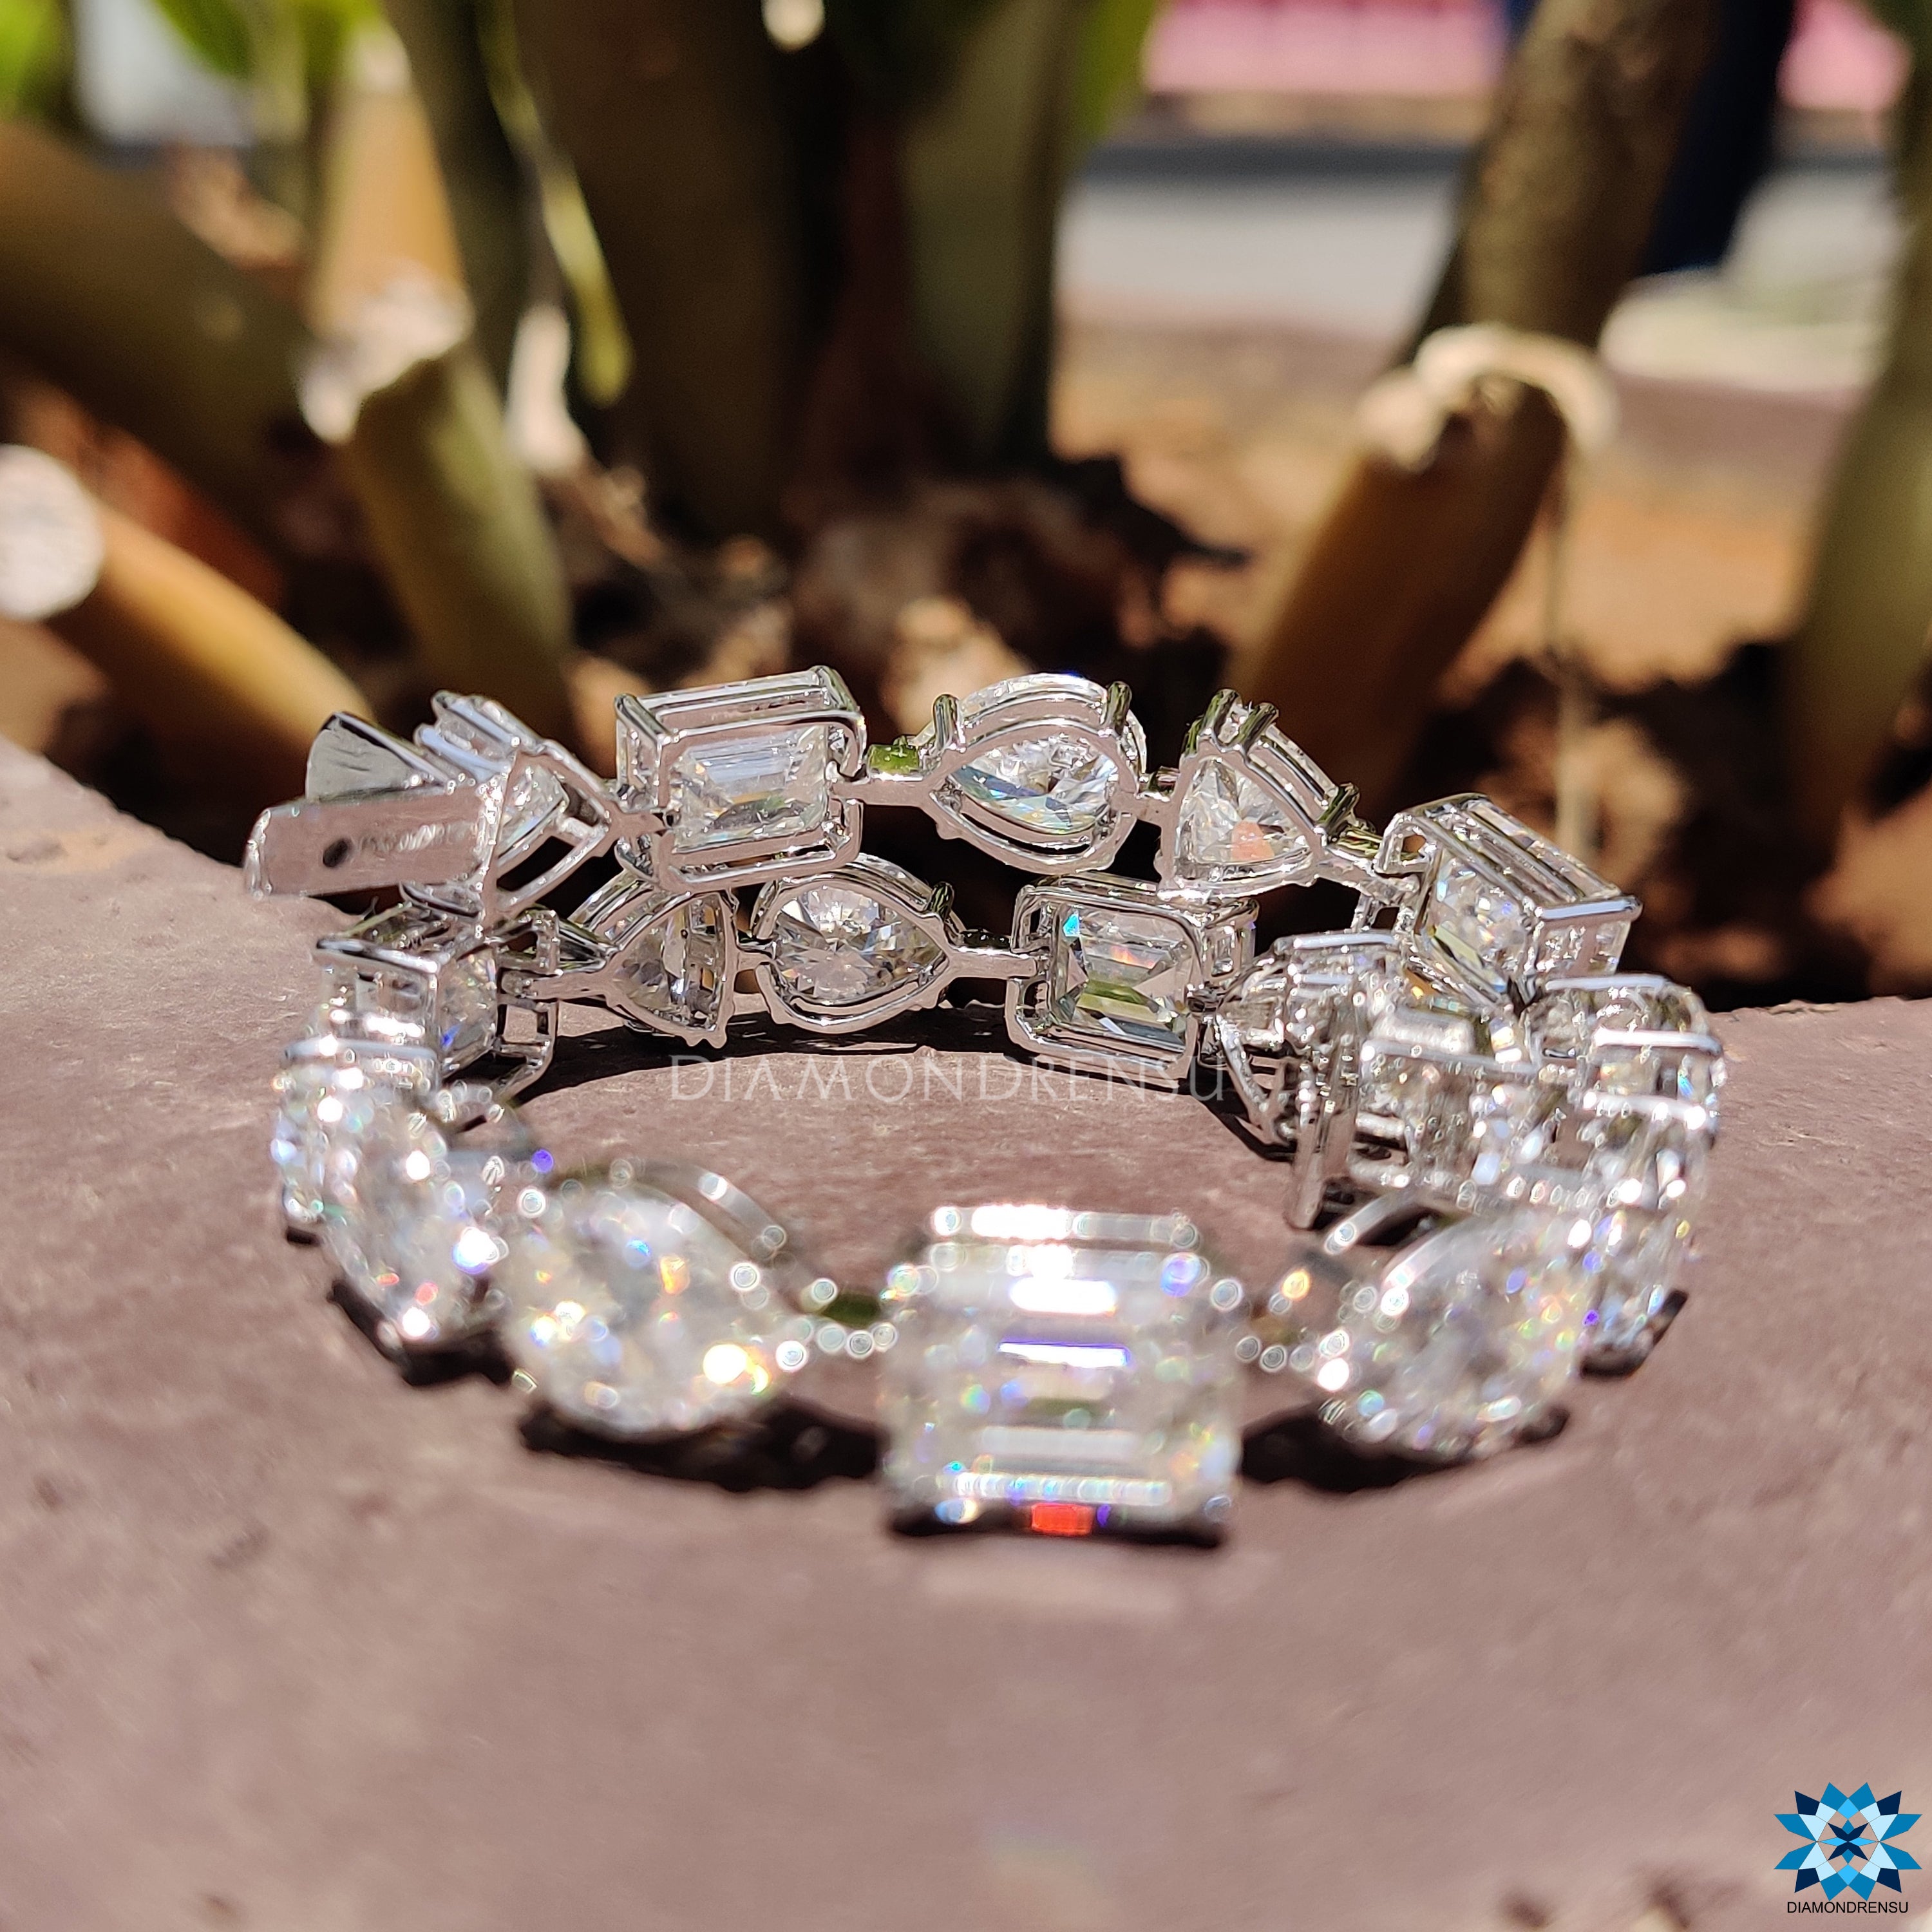 customized jewelry - diamondrensu